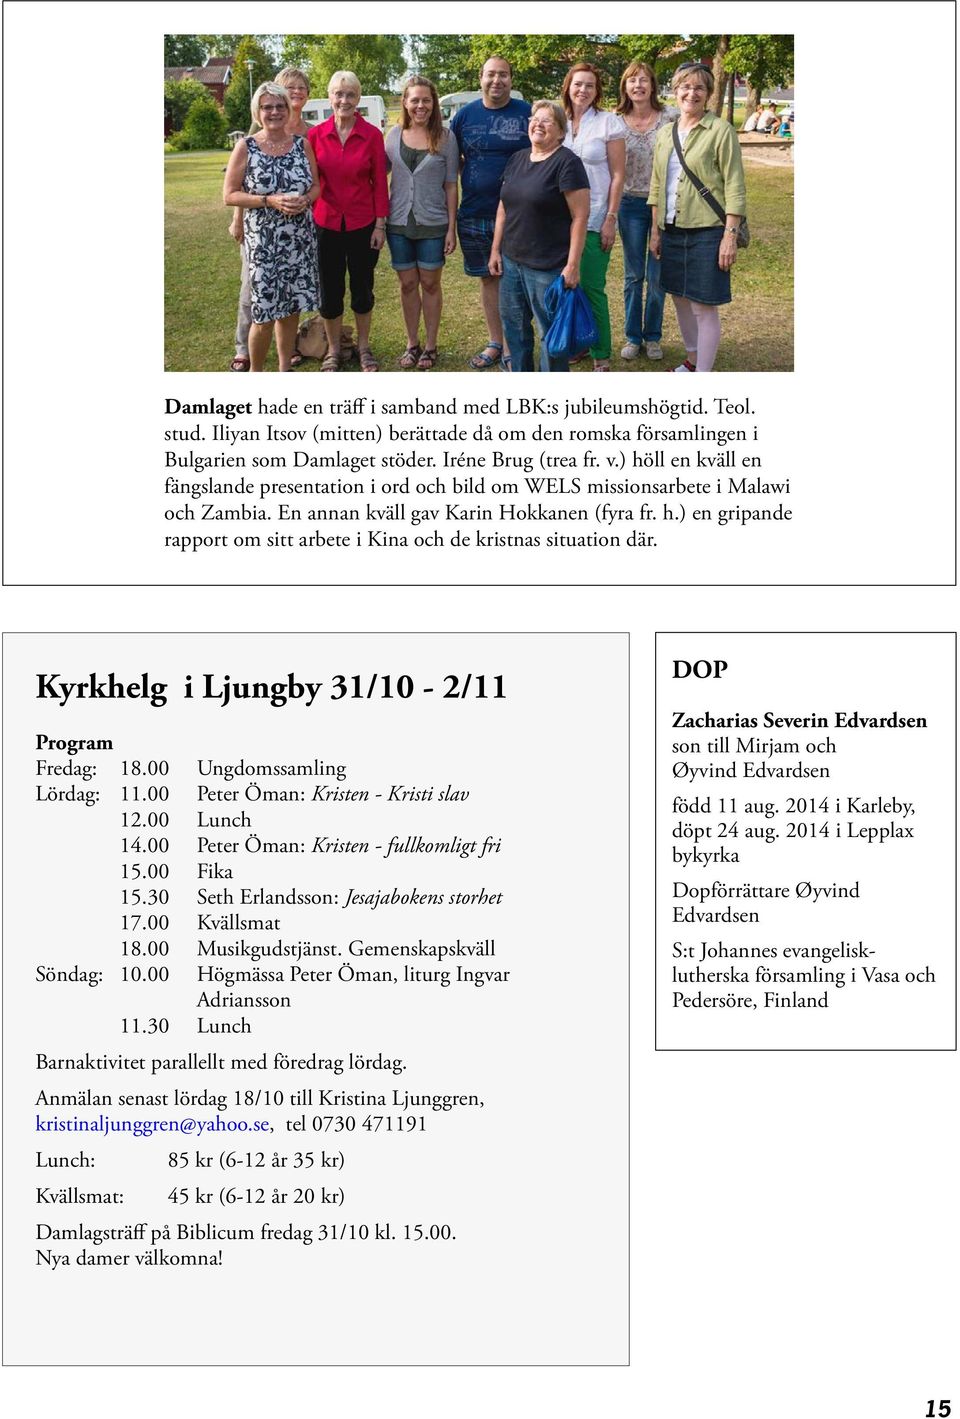 Kyrkhelg i Ljungby 31/10-2/11 Program Fredag: 18.00 Ungdomssamling Lördag: 11.00 Peter Öman: Kristen - Kristi slav 12.00 Lunch 14.00 Peter Öman: Kristen - fullkomligt fri 15.00 Fika 15.